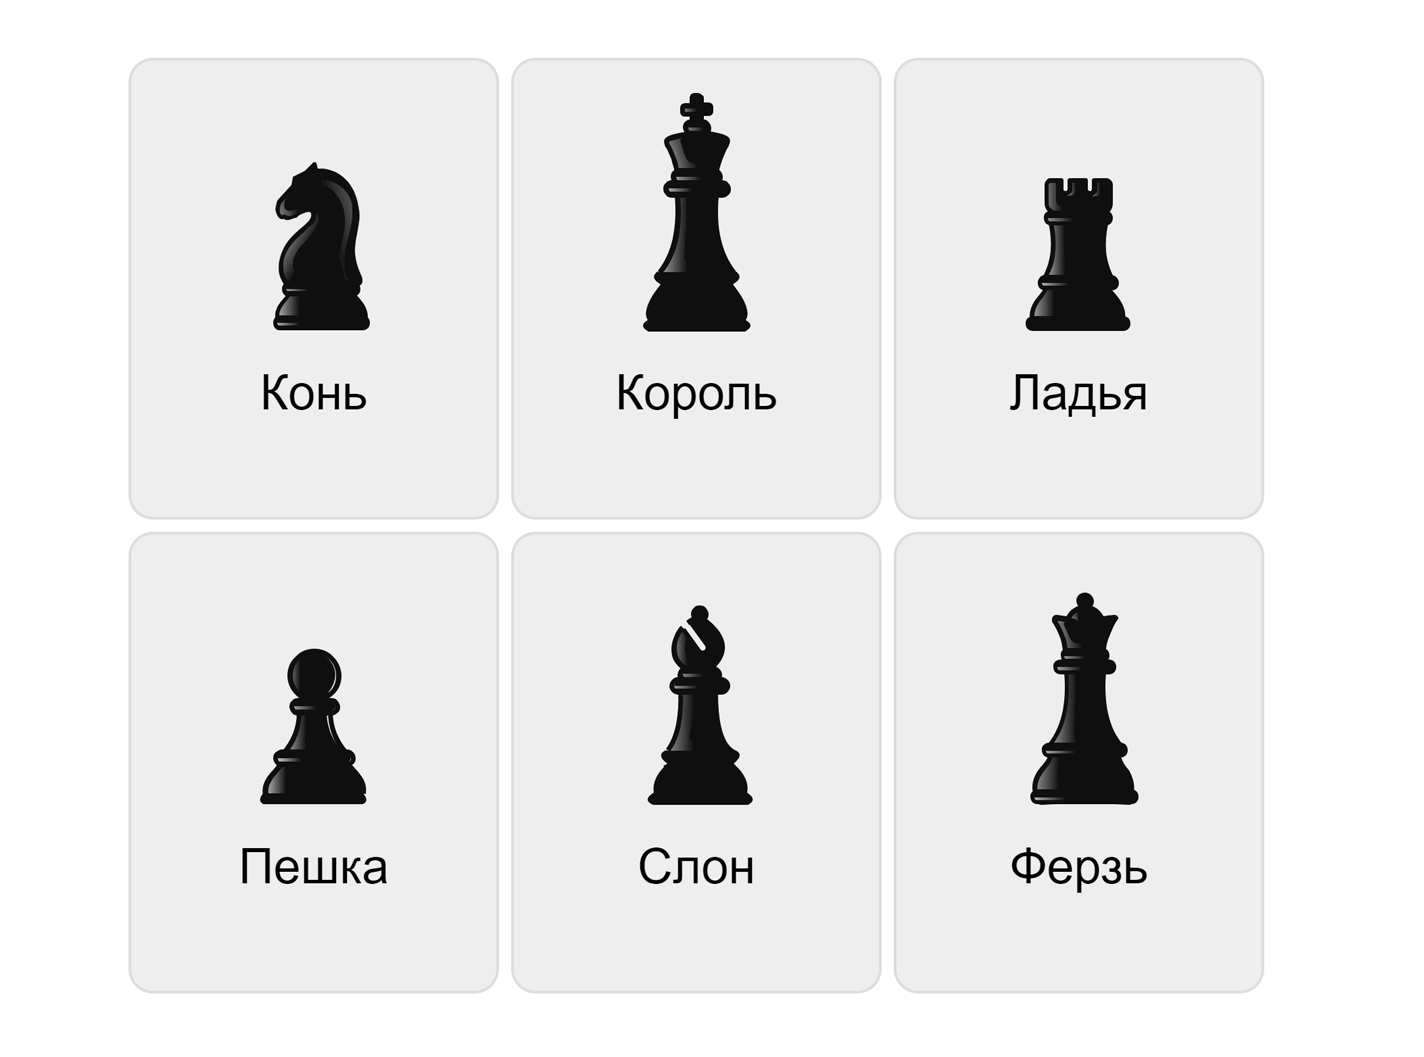 Schackpjäser på ryska